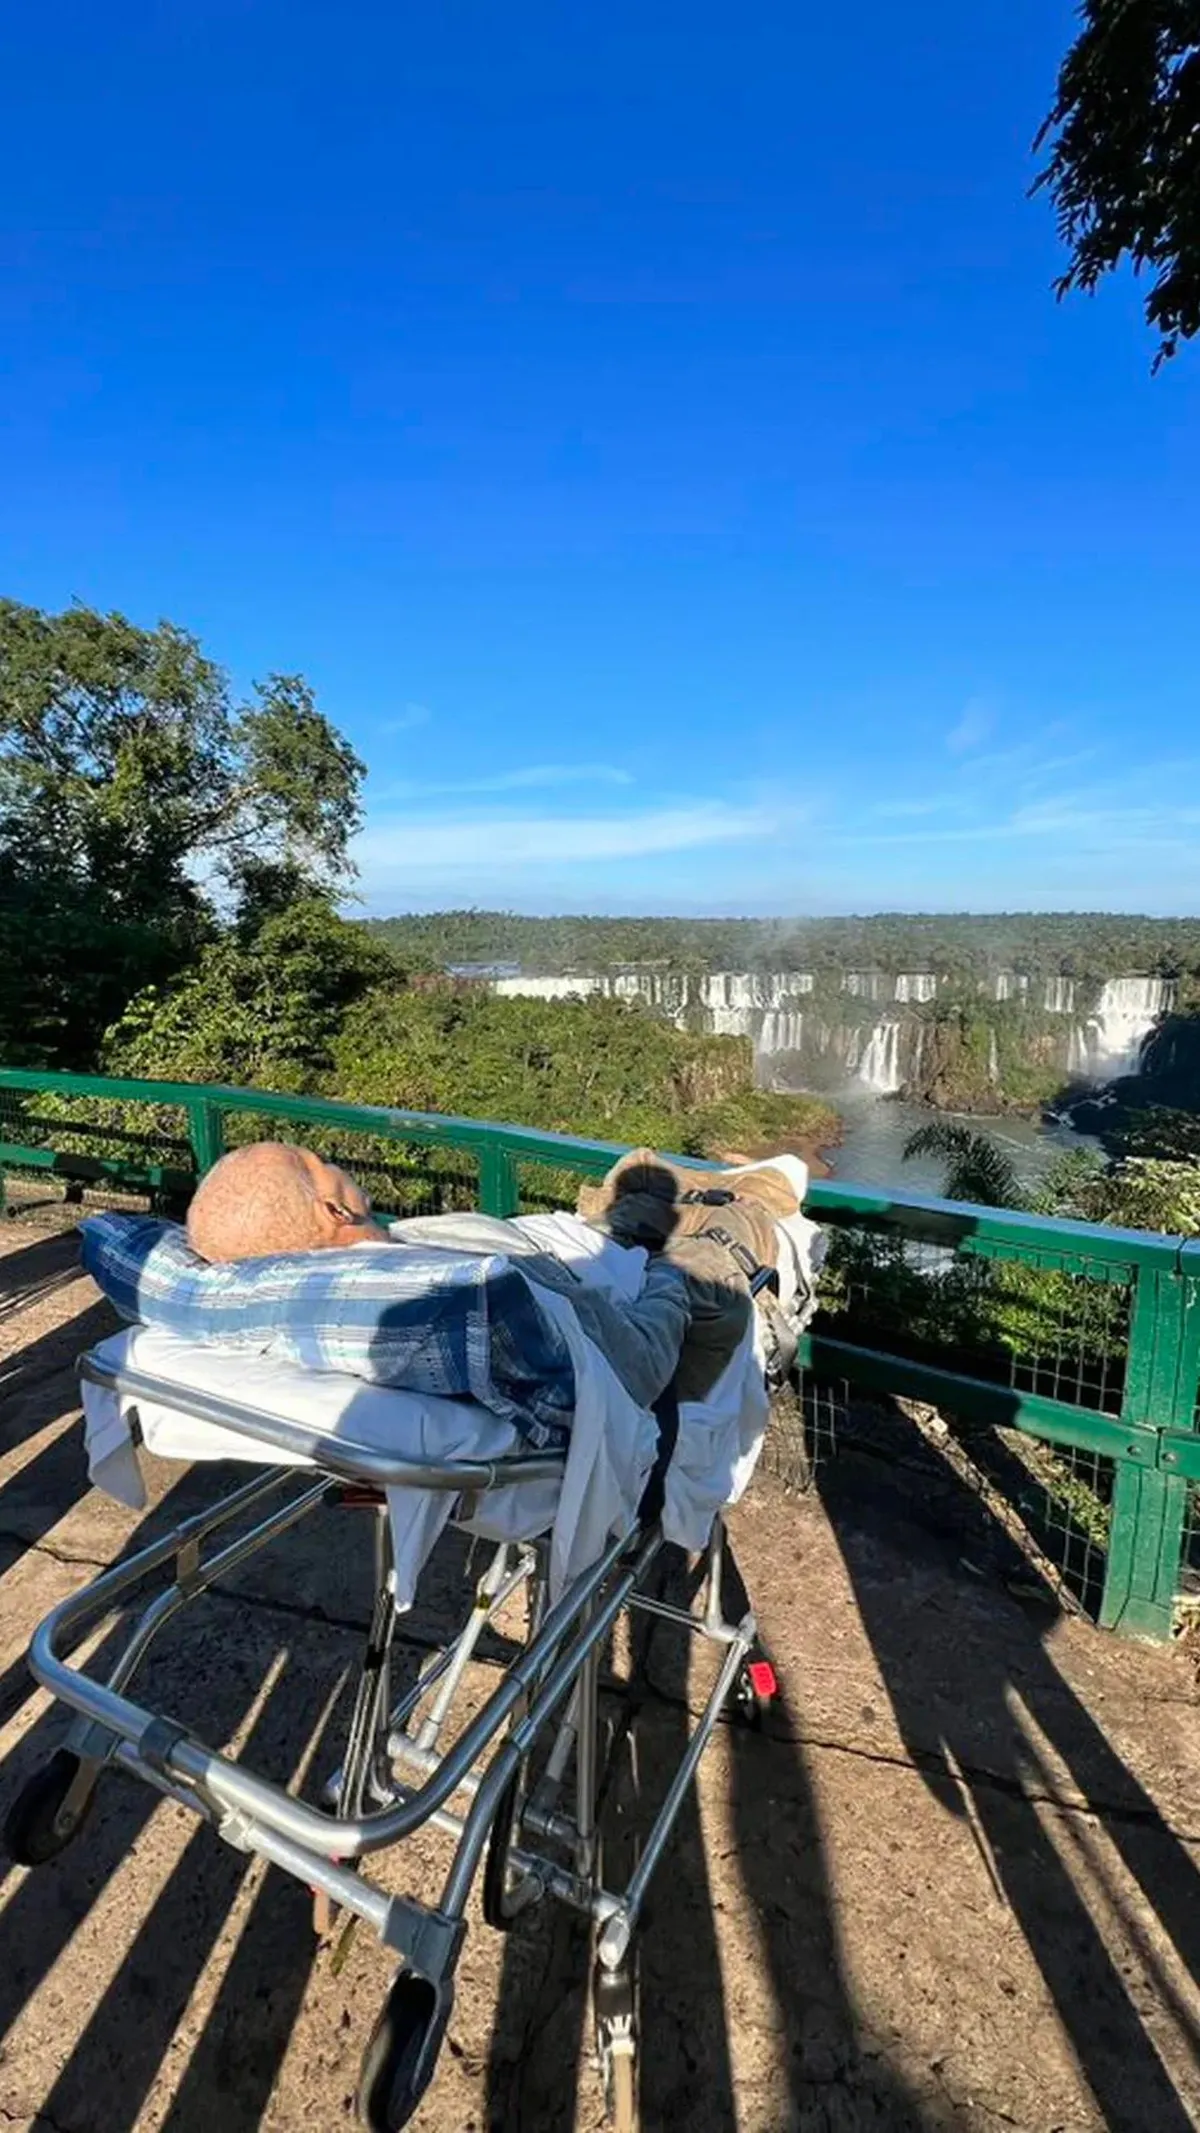 La historia de vida del paciente que pidió visitar las Cataratas del Iguazú como su último deseo • Canal C